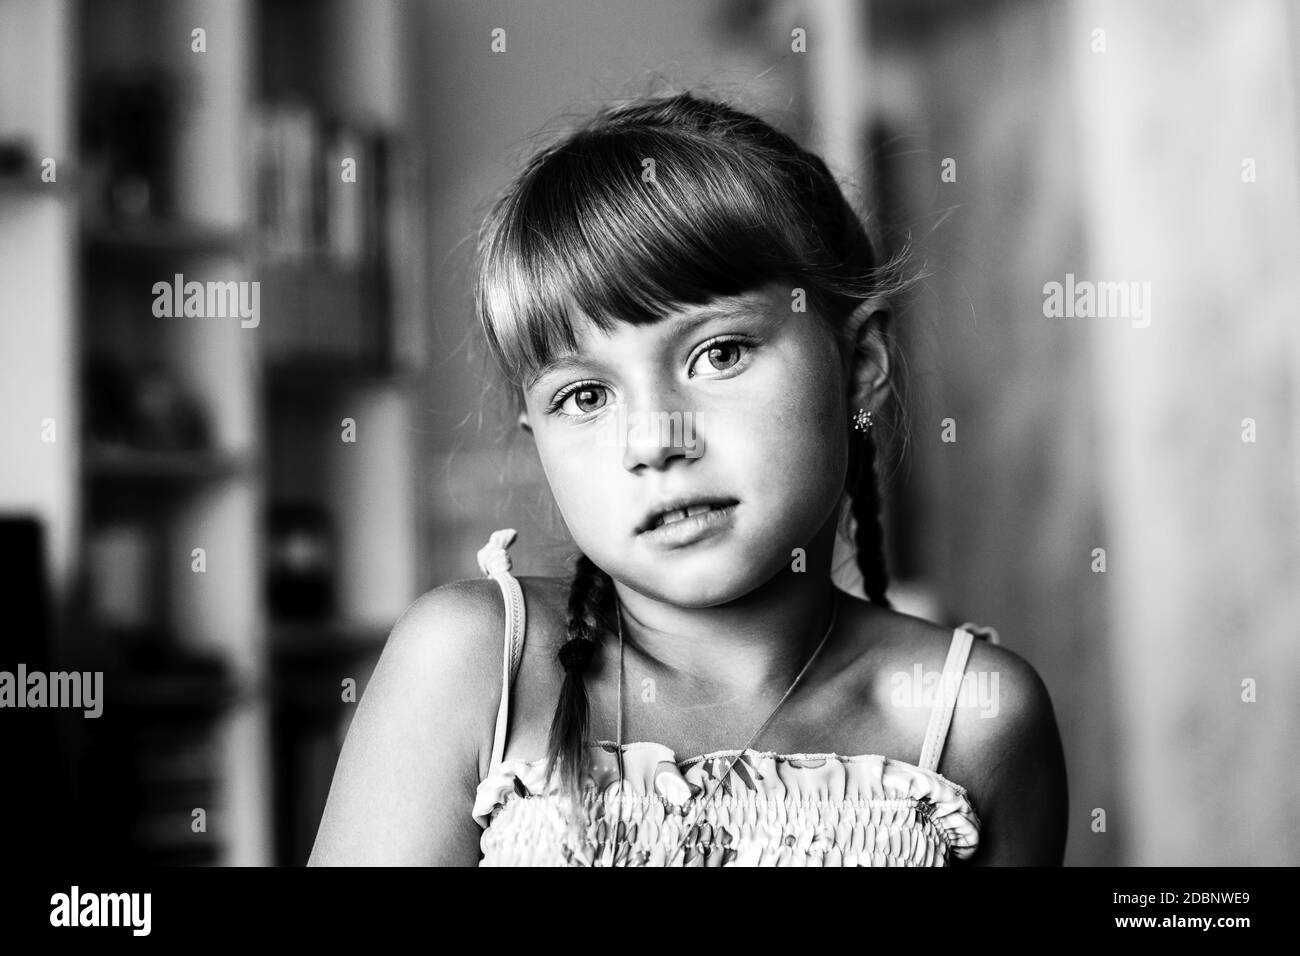 Porträt eines kleinen Mädchens in der Kinderstube. Schwarzweiß-Foto. Stockfoto